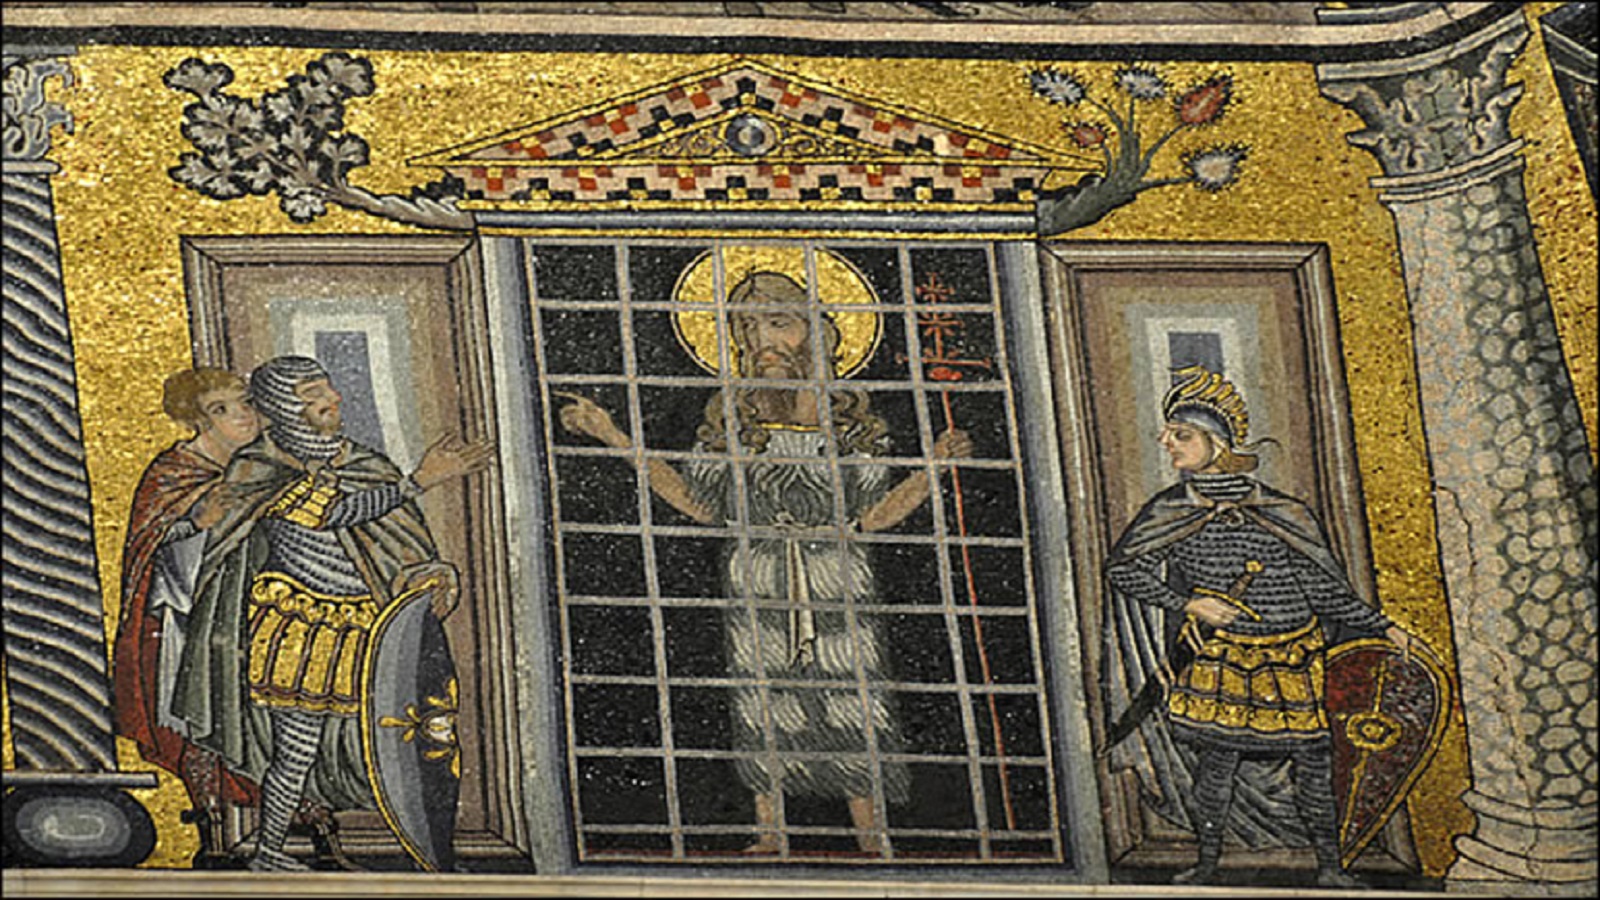  يوحنا المعمدان وراء القضبان، فسيفساء من القرن الثالث عشر، كنيسة يوحنا المعمدان في البندقية. 